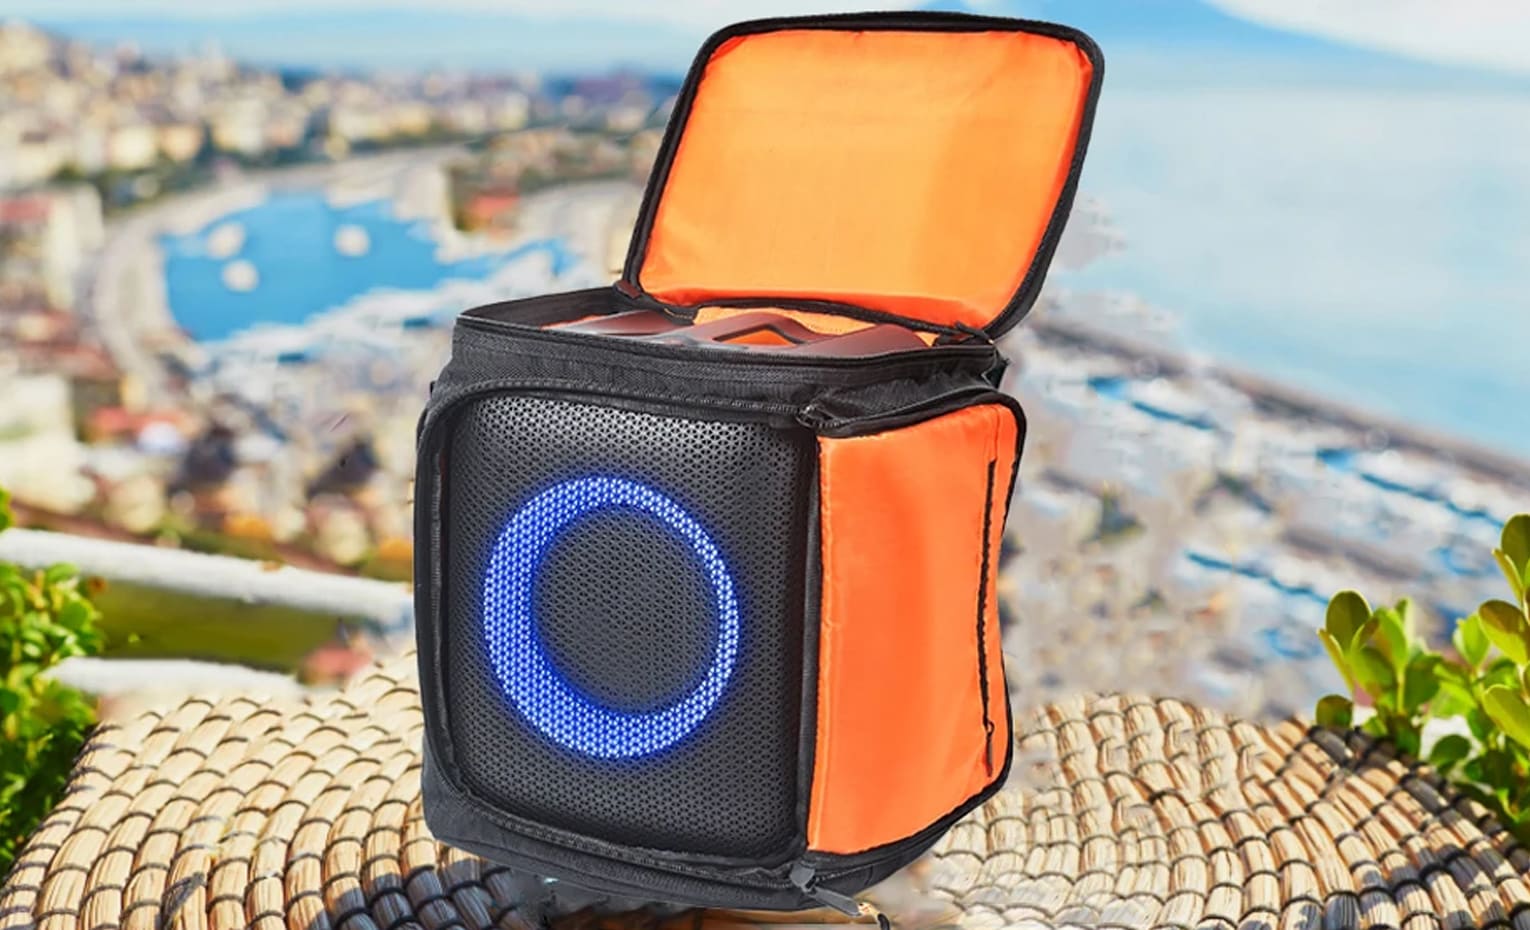 بهترین اسپیکر برای کمپینگ و فضای باز | The best speaker for camping and outdoor